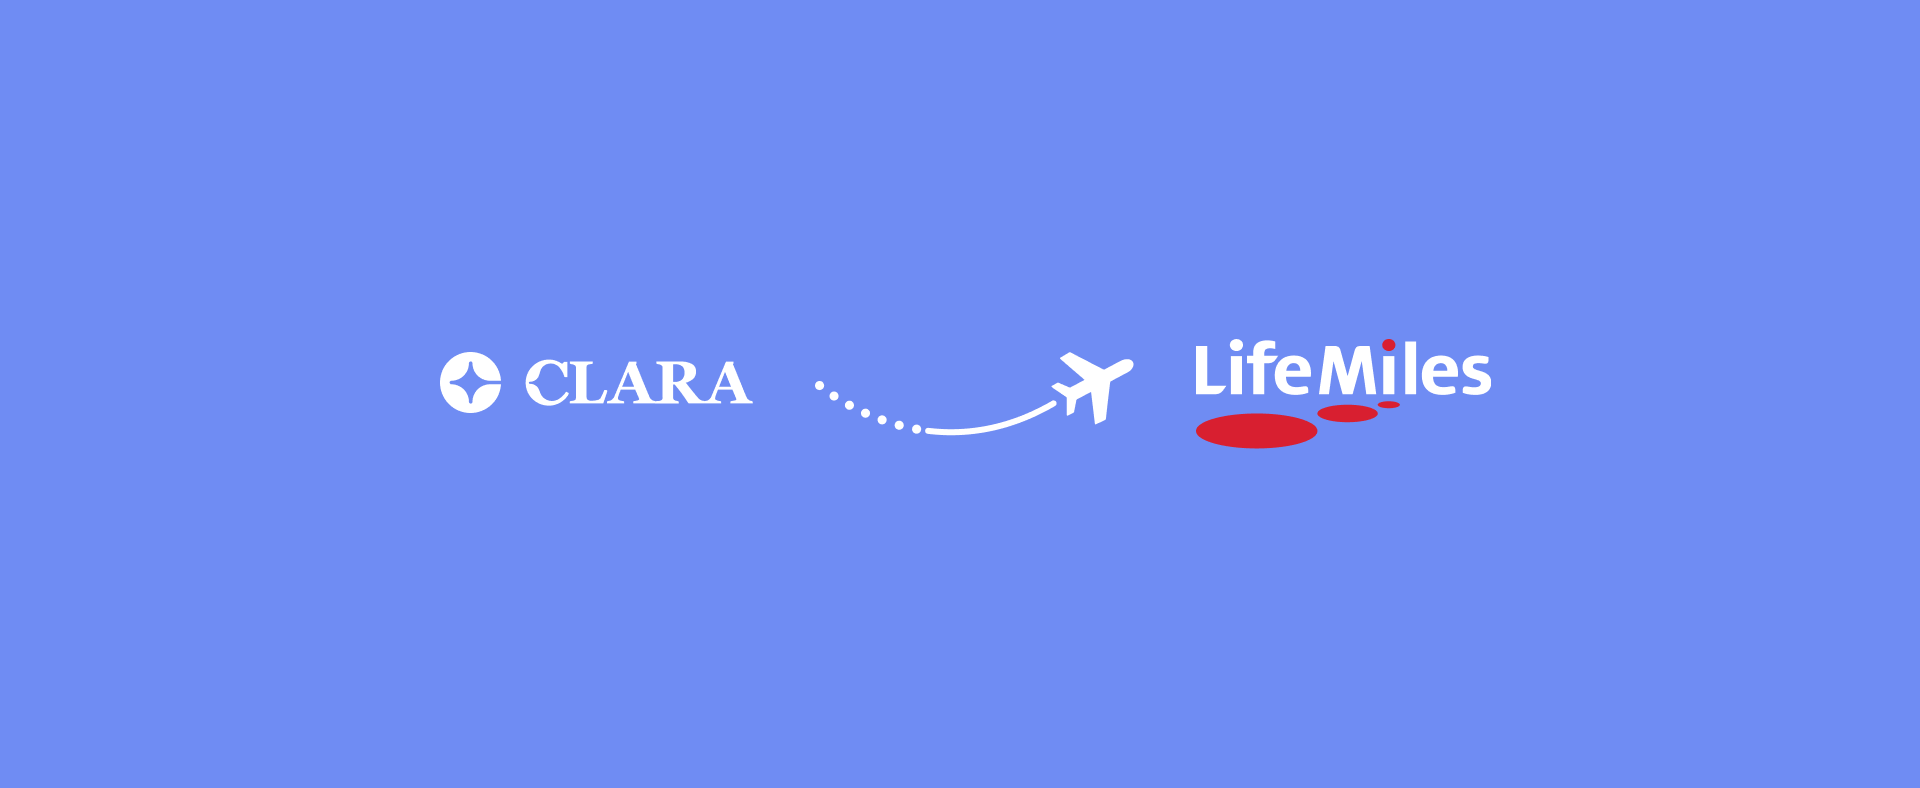 Clara y LifeMiles anunciaron alianza estratégica